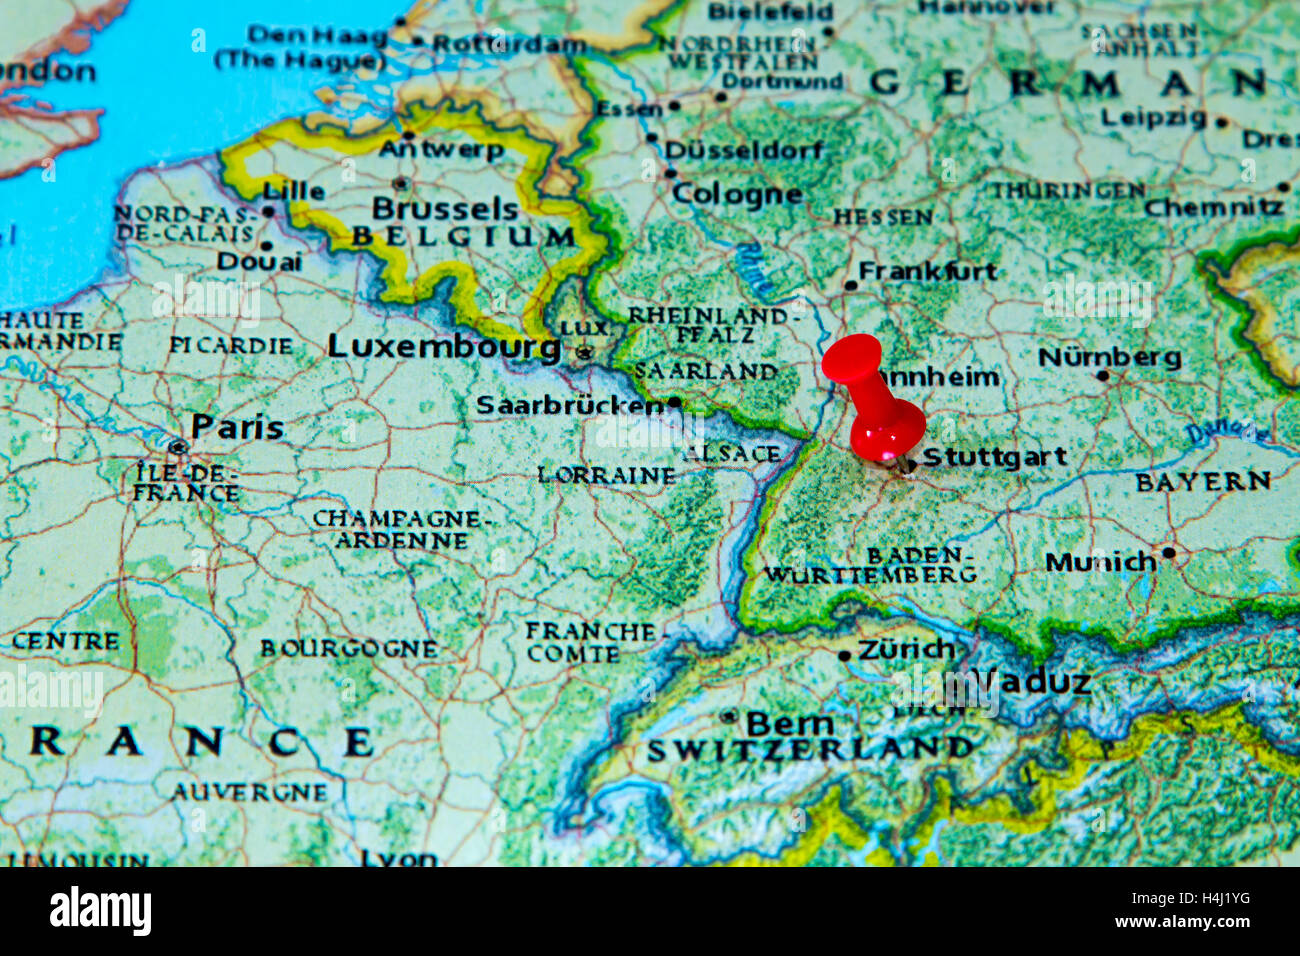 Stuttgart, Deutschland auf einer Karte von Europa fixiert. Stockfoto